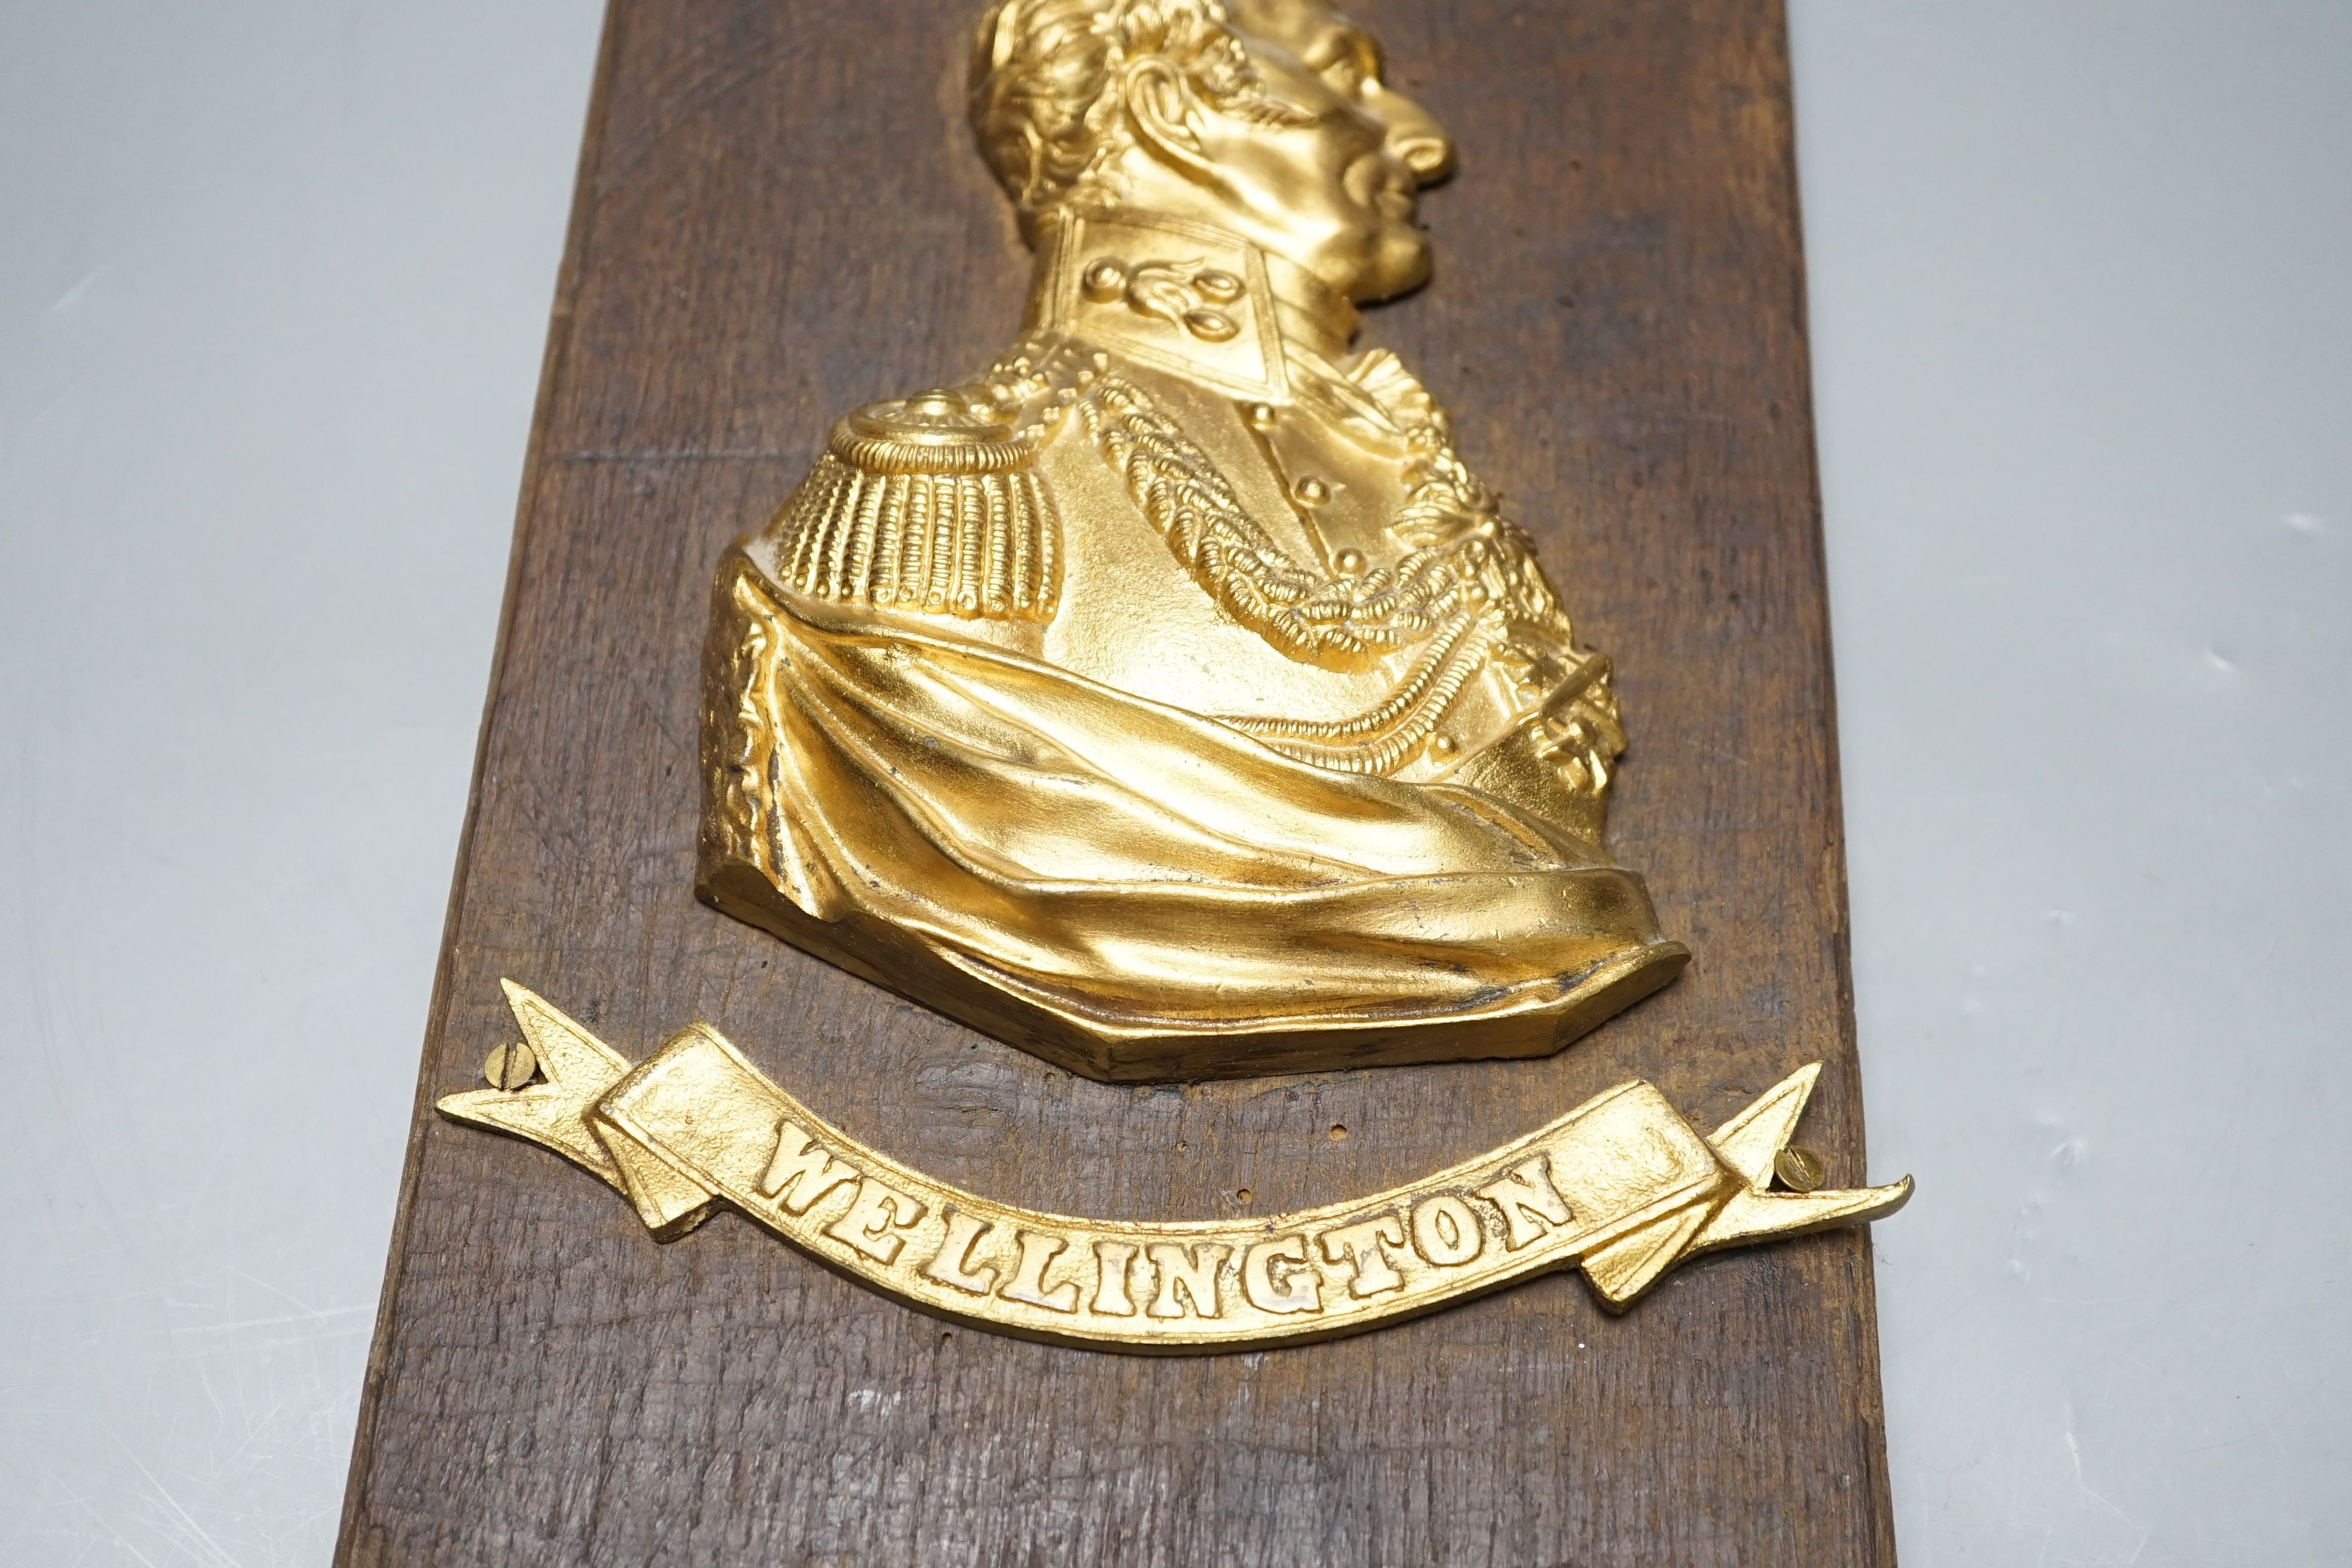 A gilt metal ‘Wellington’ plaque on wooden panel, 30 x 19cm